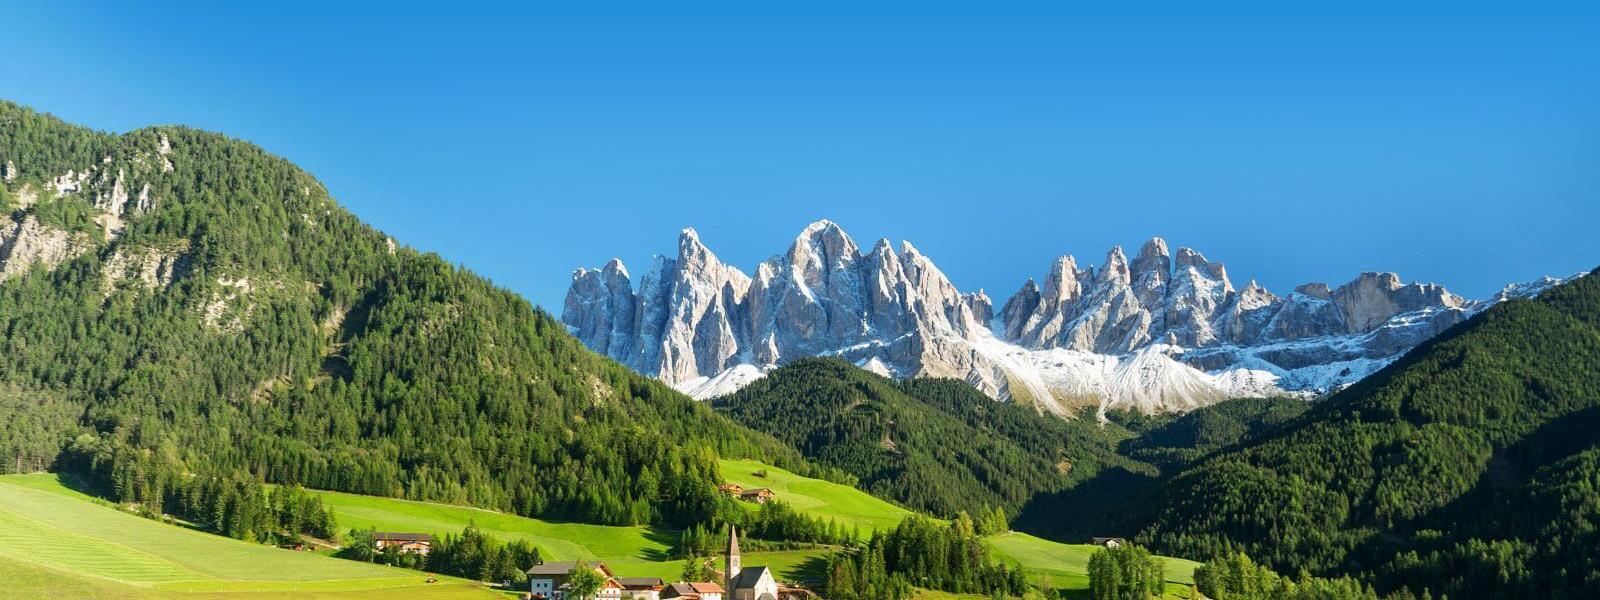 Luxus Ferienhäuser und Ferienwohnungen in Südtirol - BELLEVUE Ferienhaus